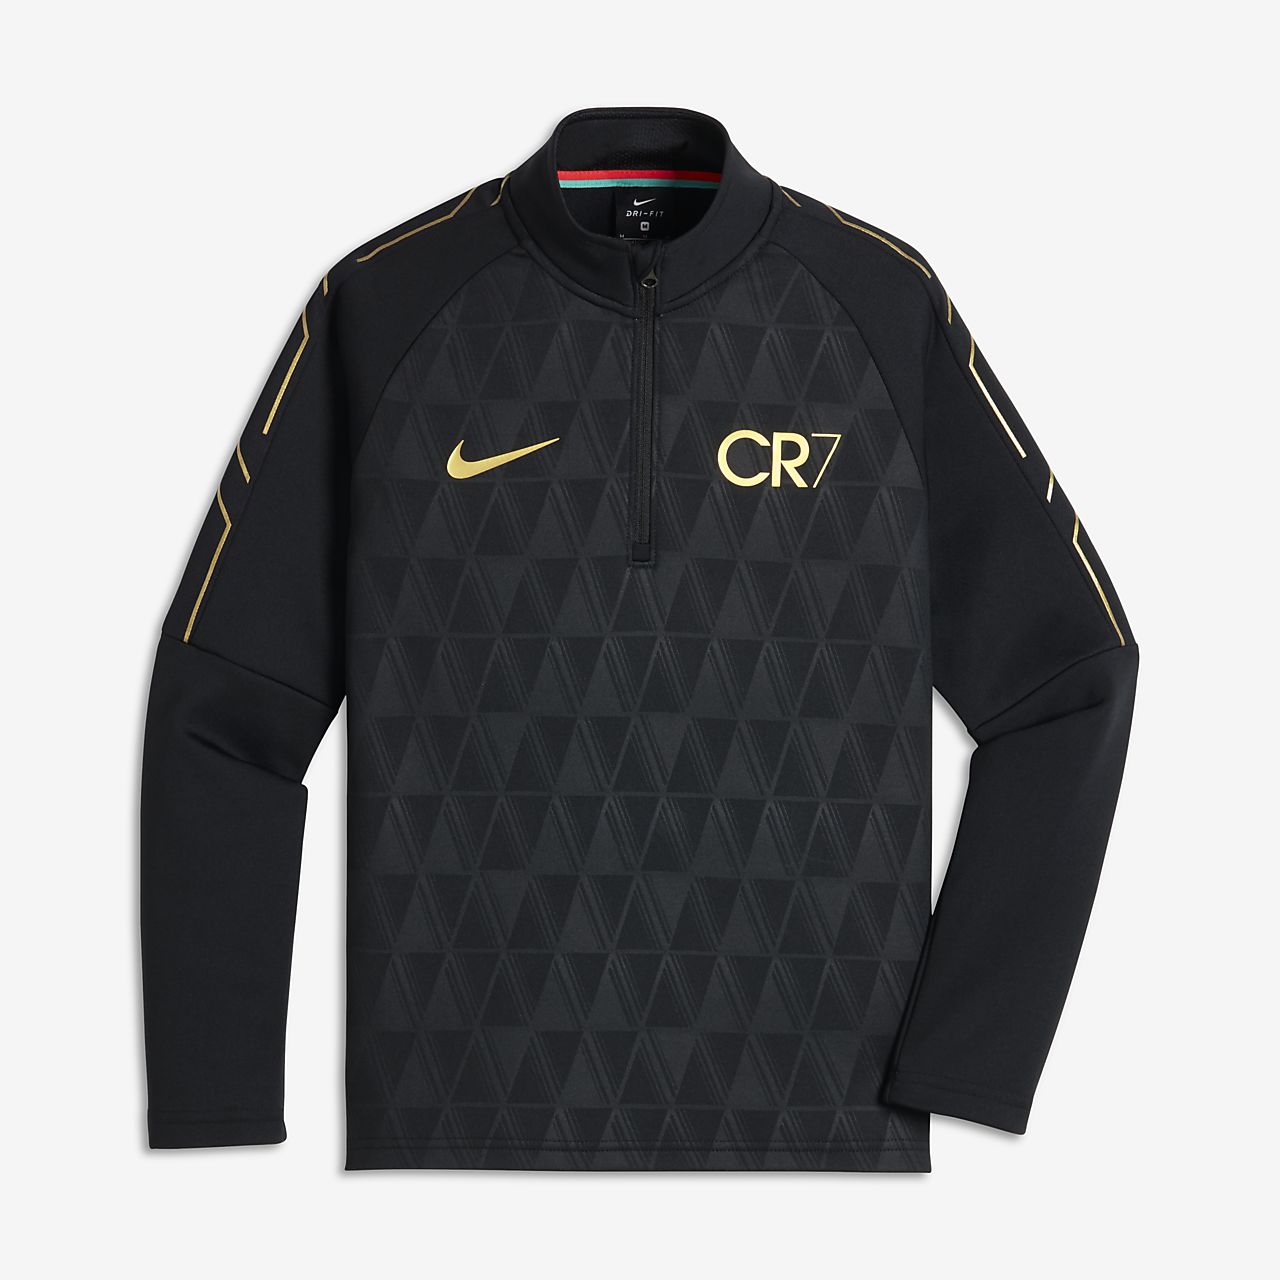 cr7 jacket nike